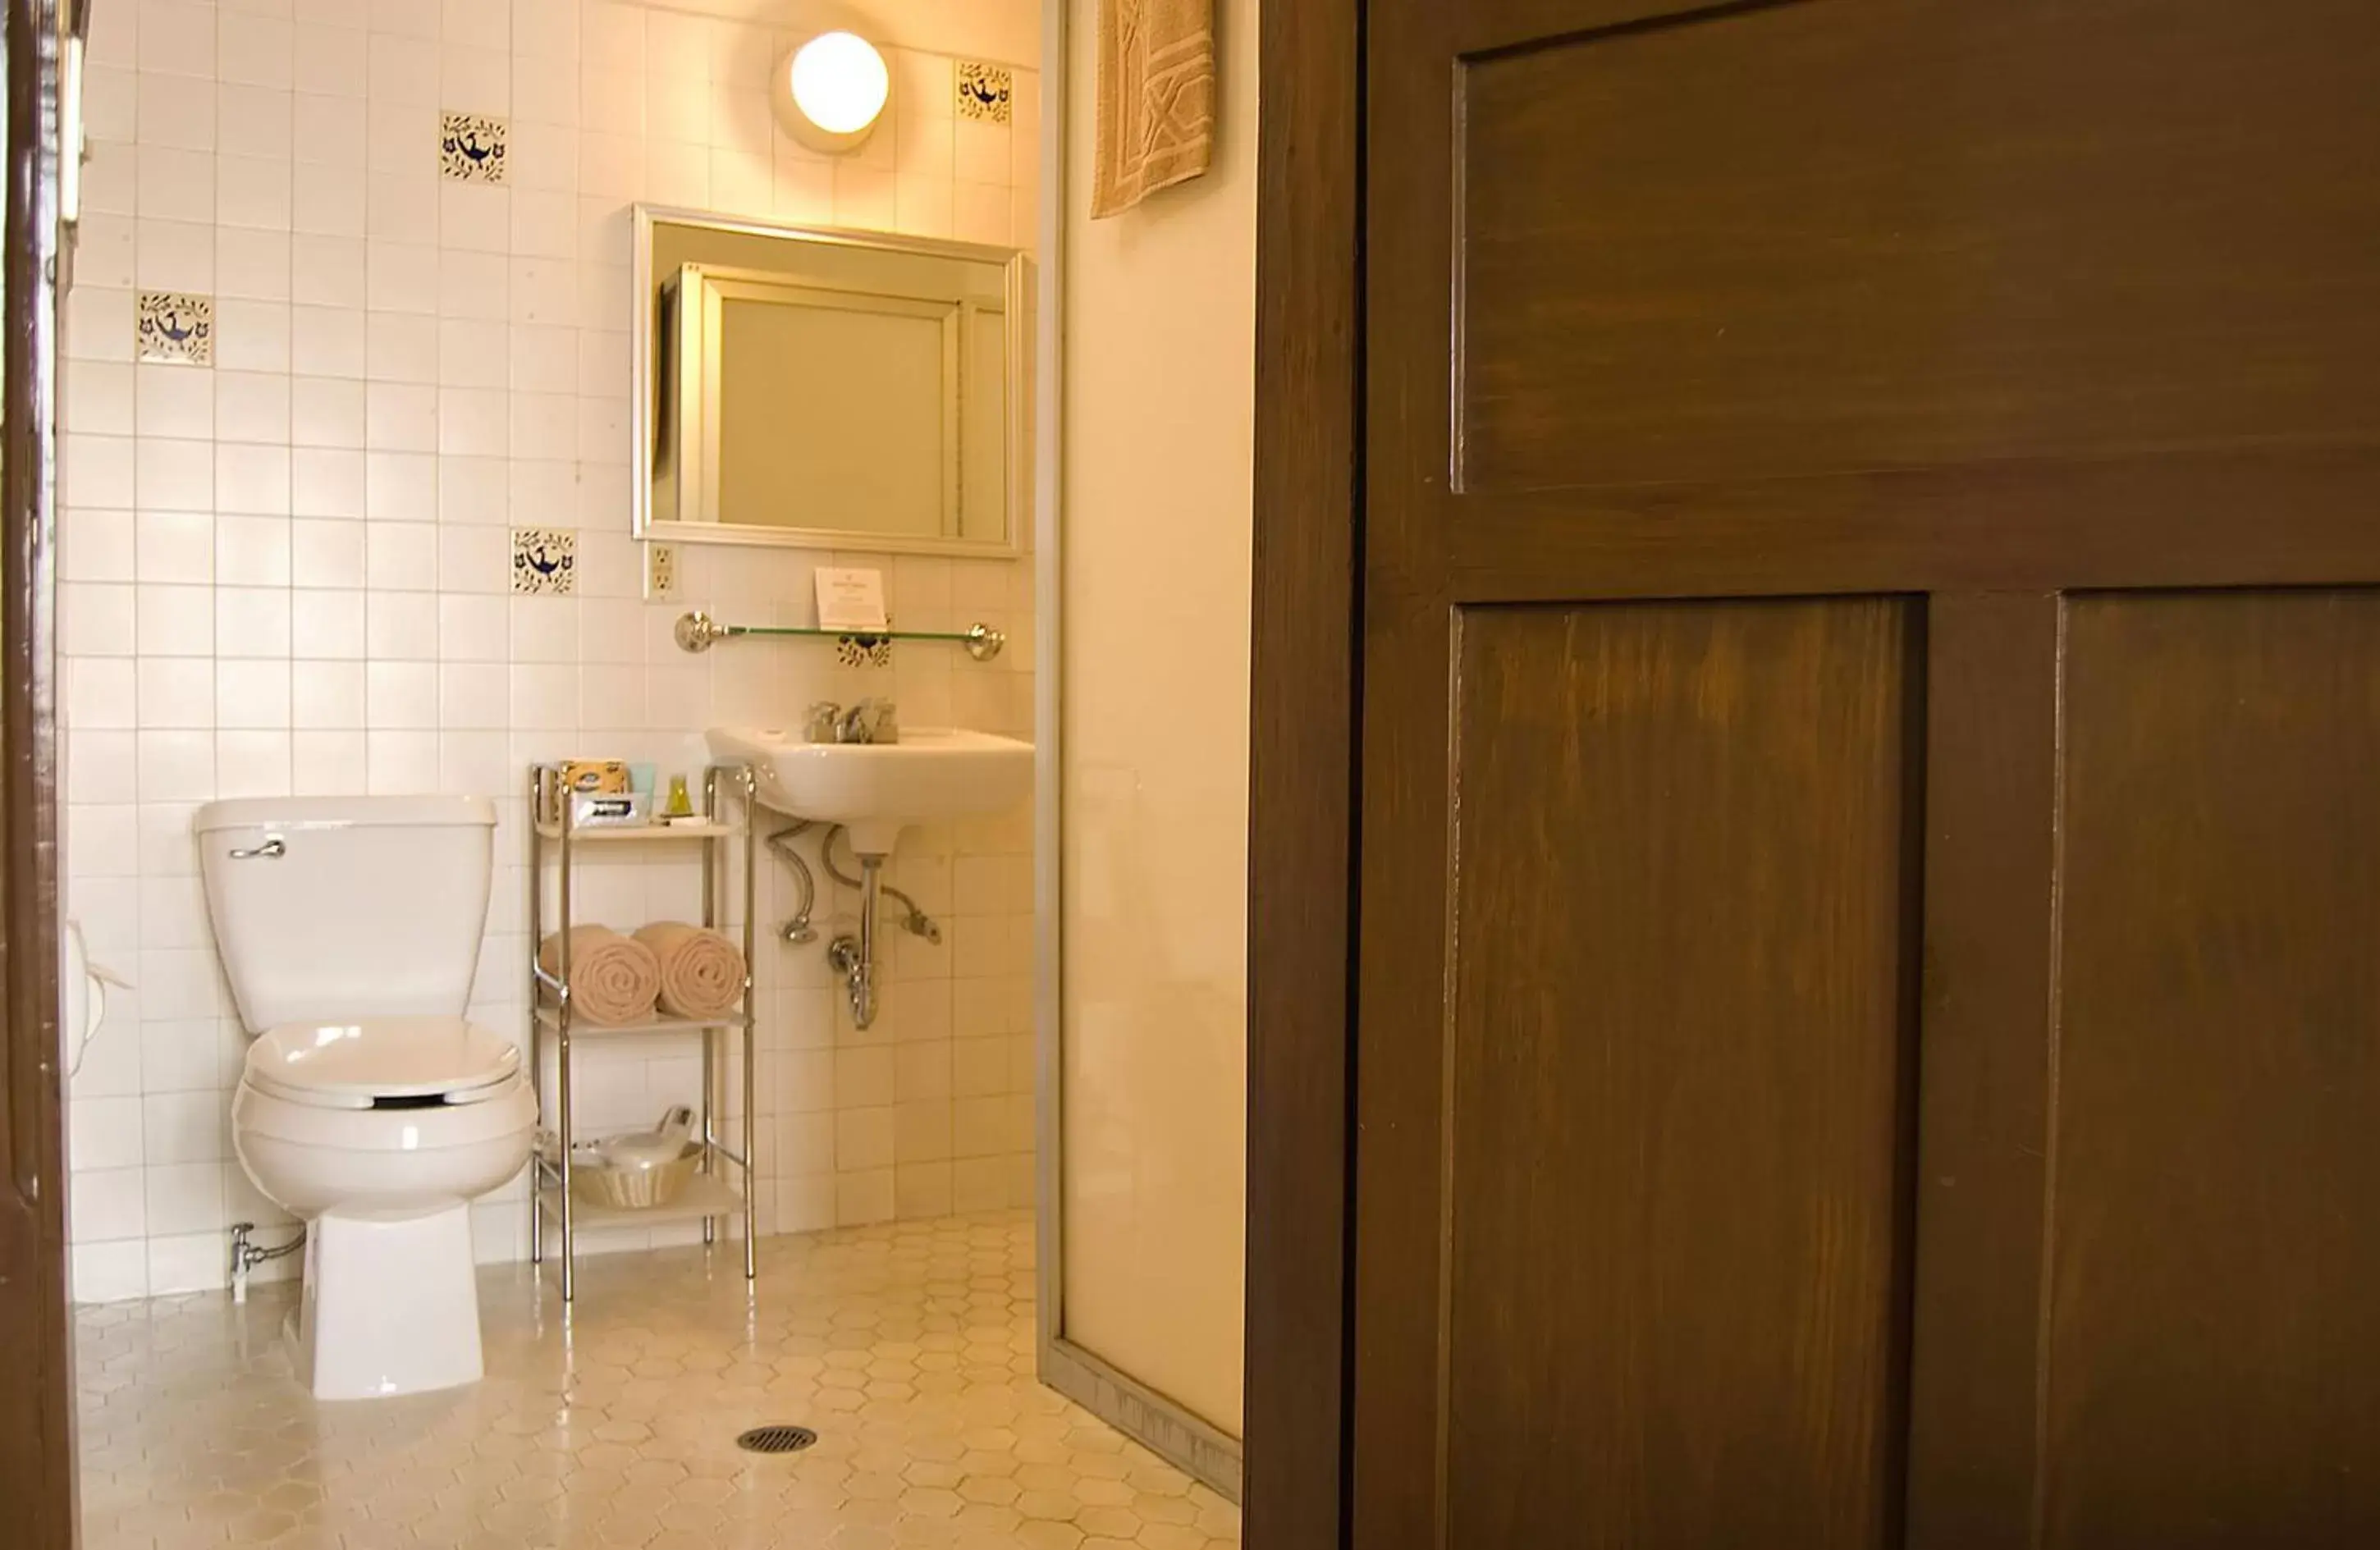 Bathroom in Hotel Casino Morelia